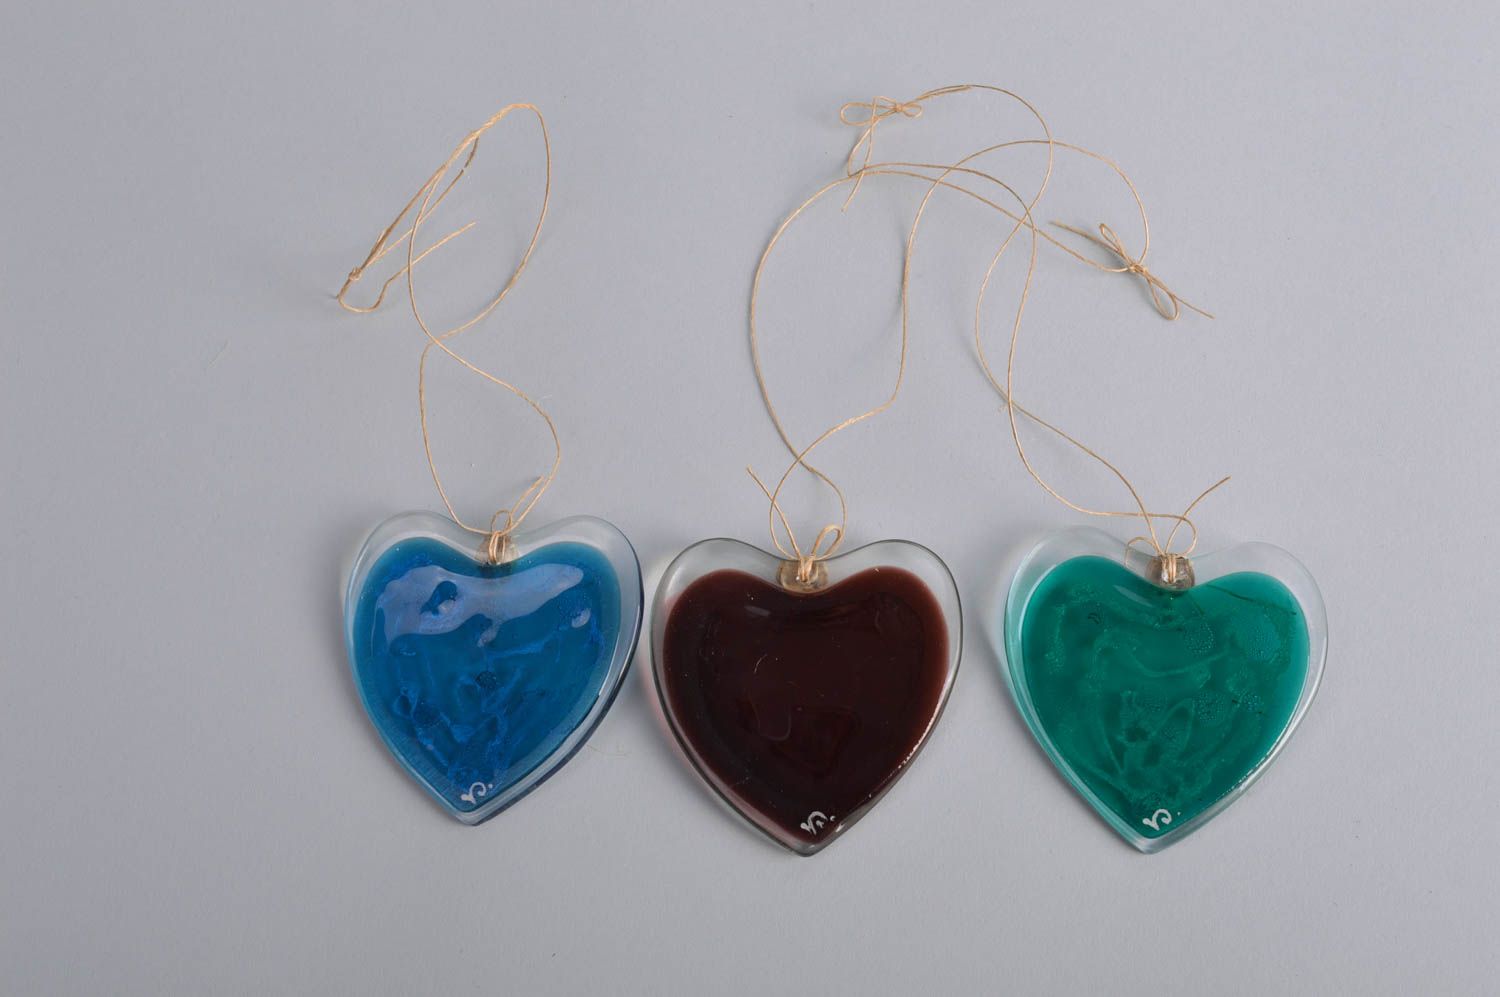 Набор подвесок для дома 3 разноцветных сердечка из стекла на шнурках хендмейд фото 5